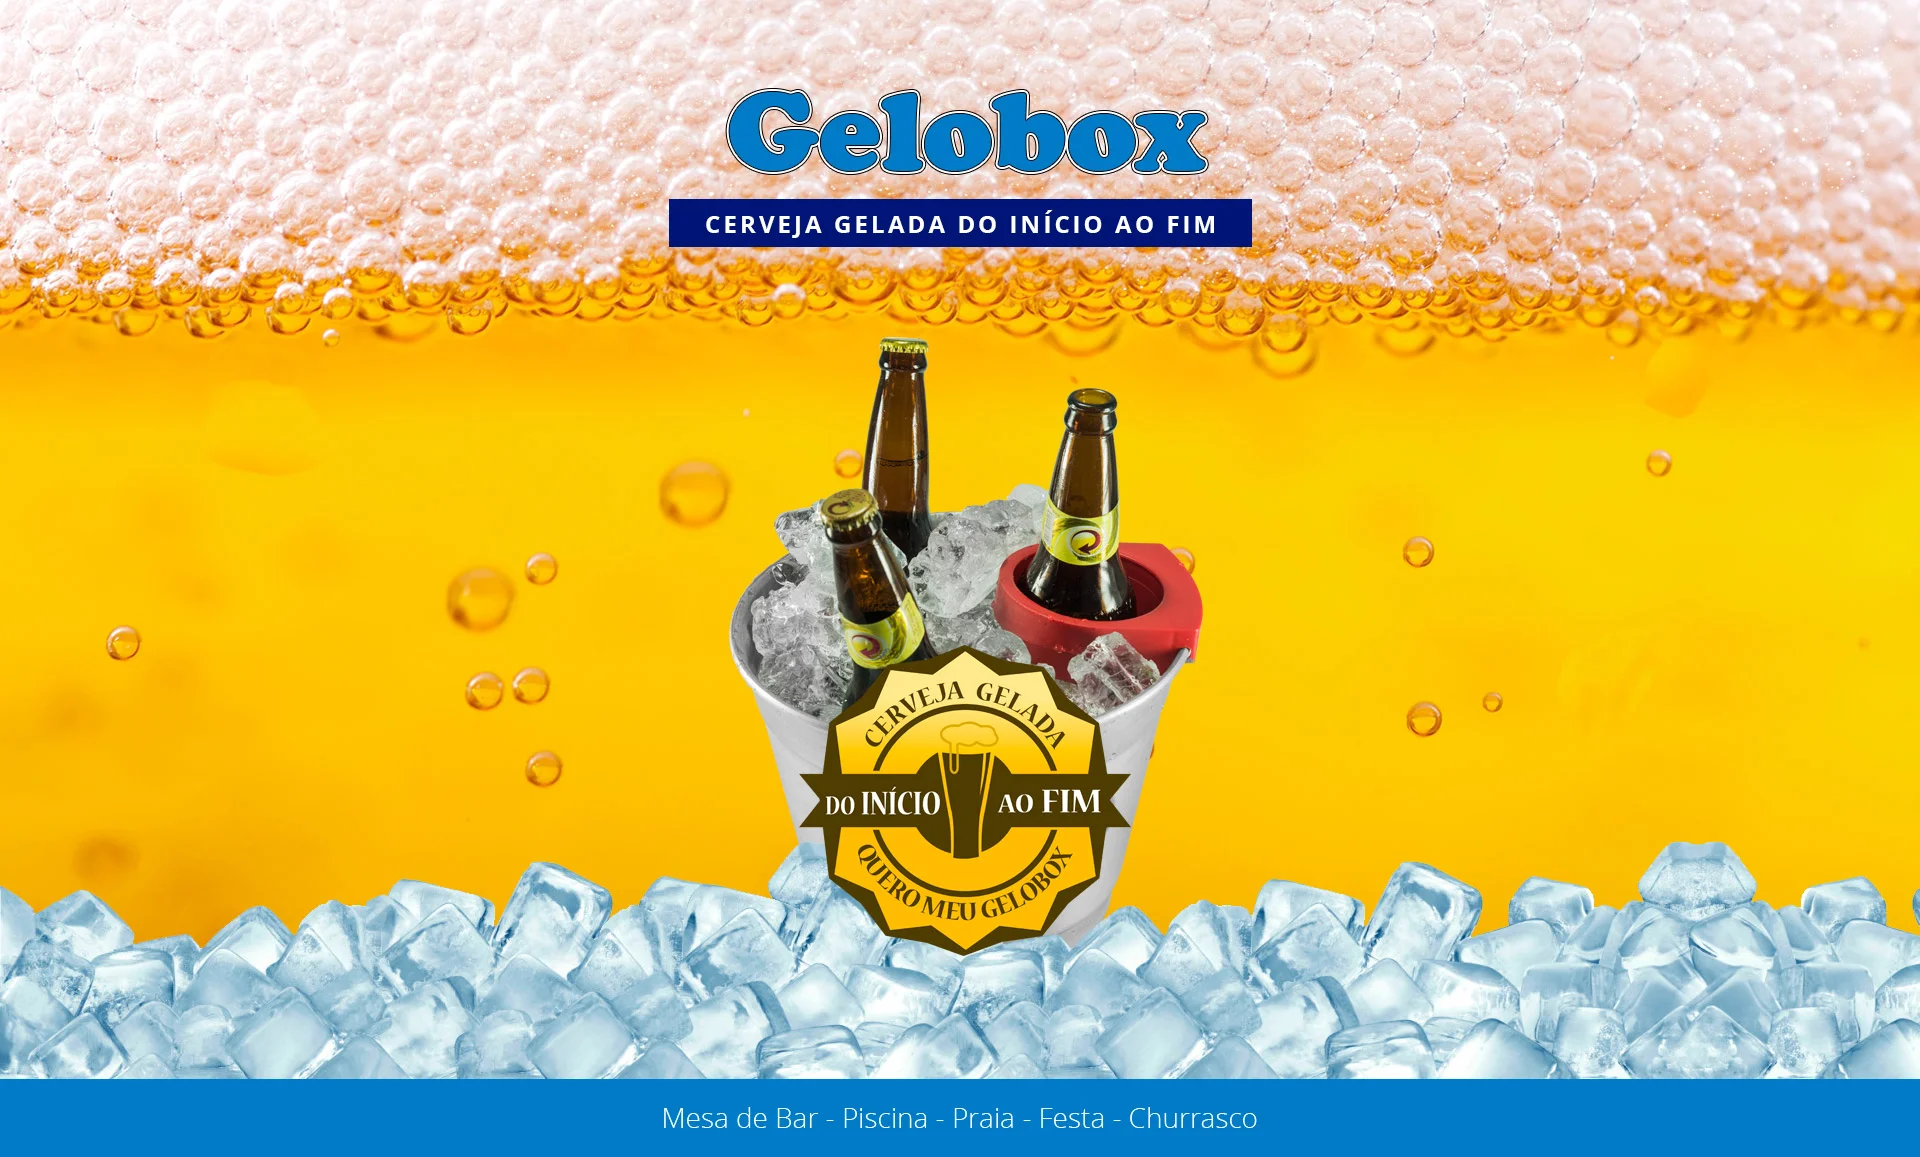 Gelobox - Gelobox.com.br